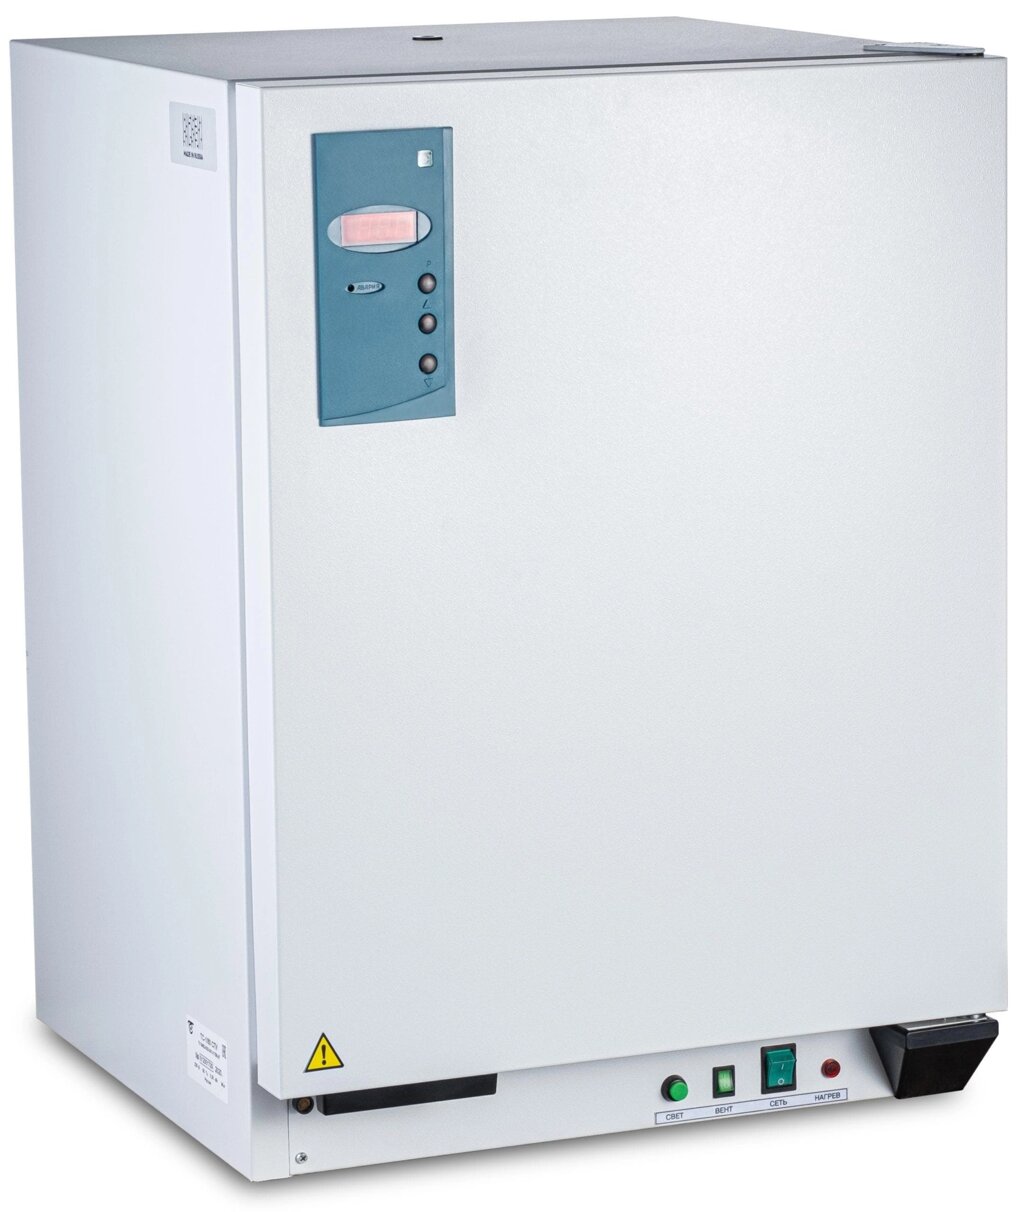 Суховоздушный термостат, 80 литров, 5-60 °С, без охлаждения, лакокрасочное покрытие от компании Labdevices - Лабораторное оборудование и посуда - фото 1